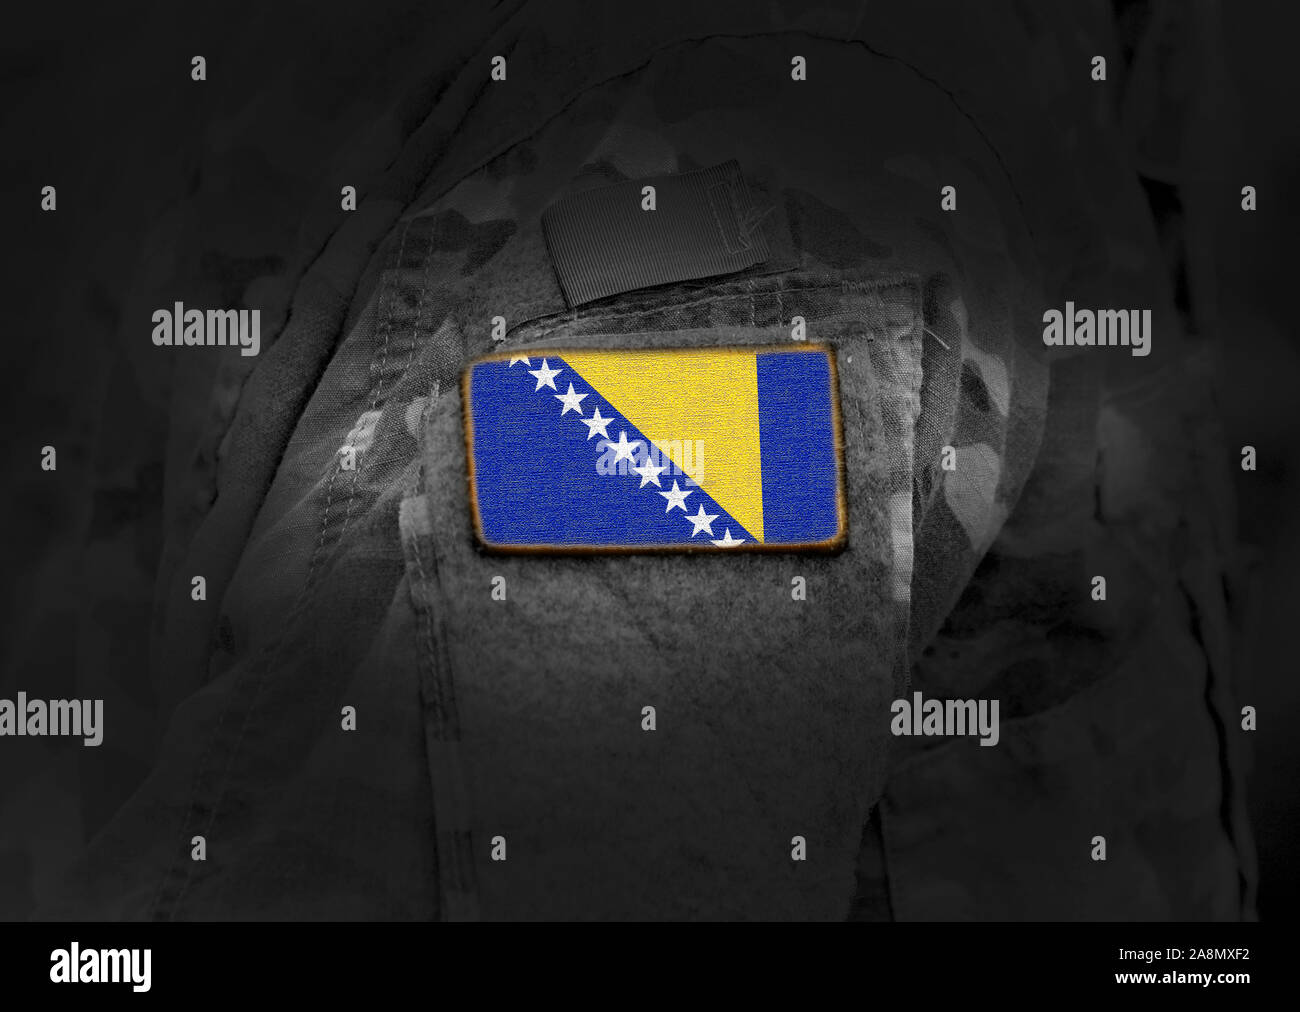 Flagge von Bosnien und Herzegowina auf der Uniform. Armee, Soldaten, Soldaten. Collage. Stockfoto